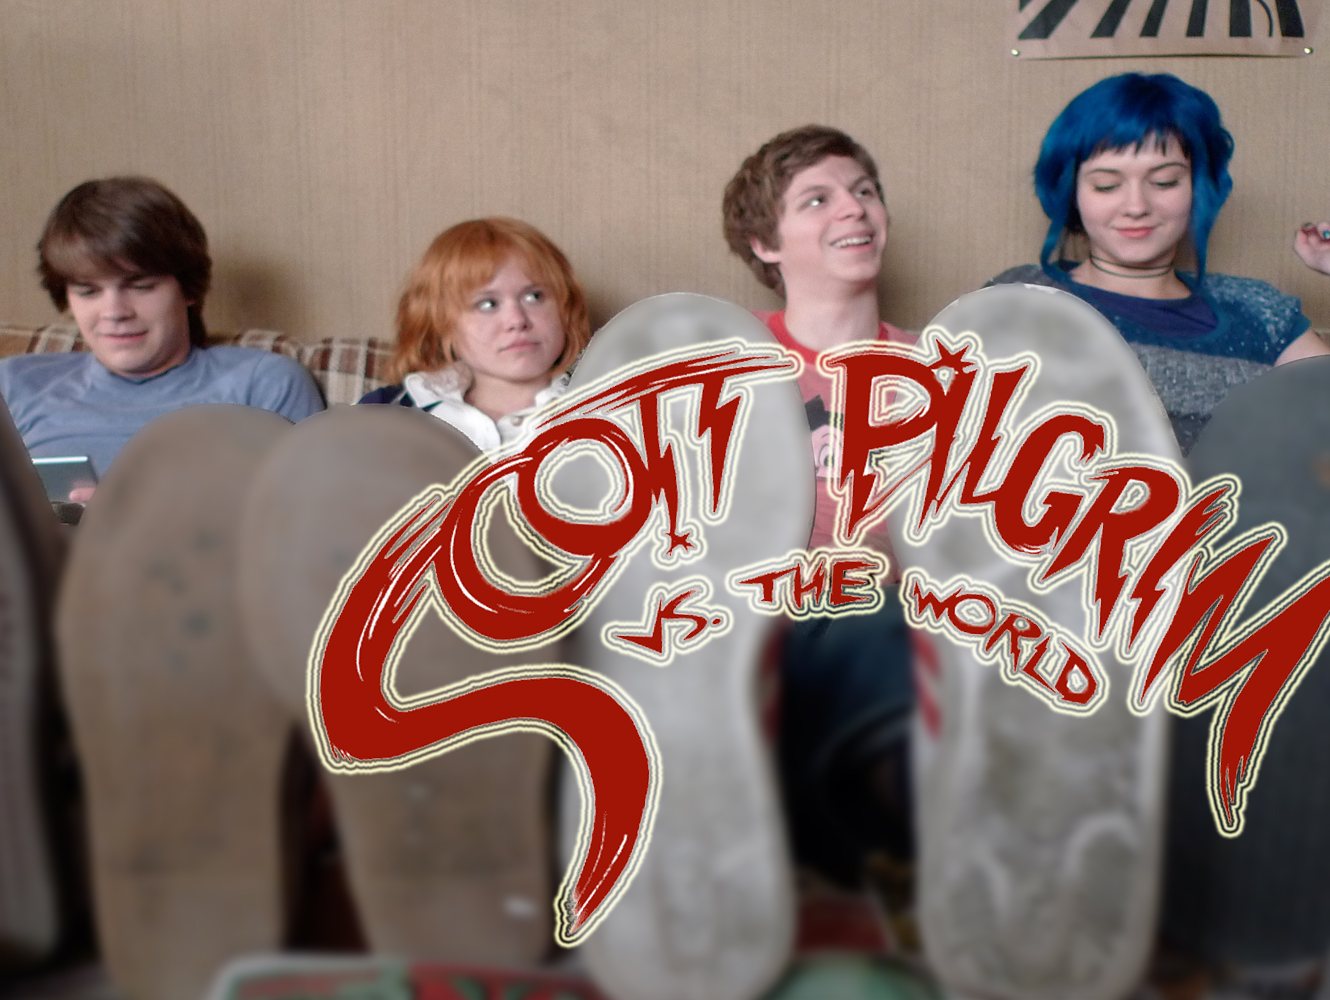 Scott Pilgrim VS The World